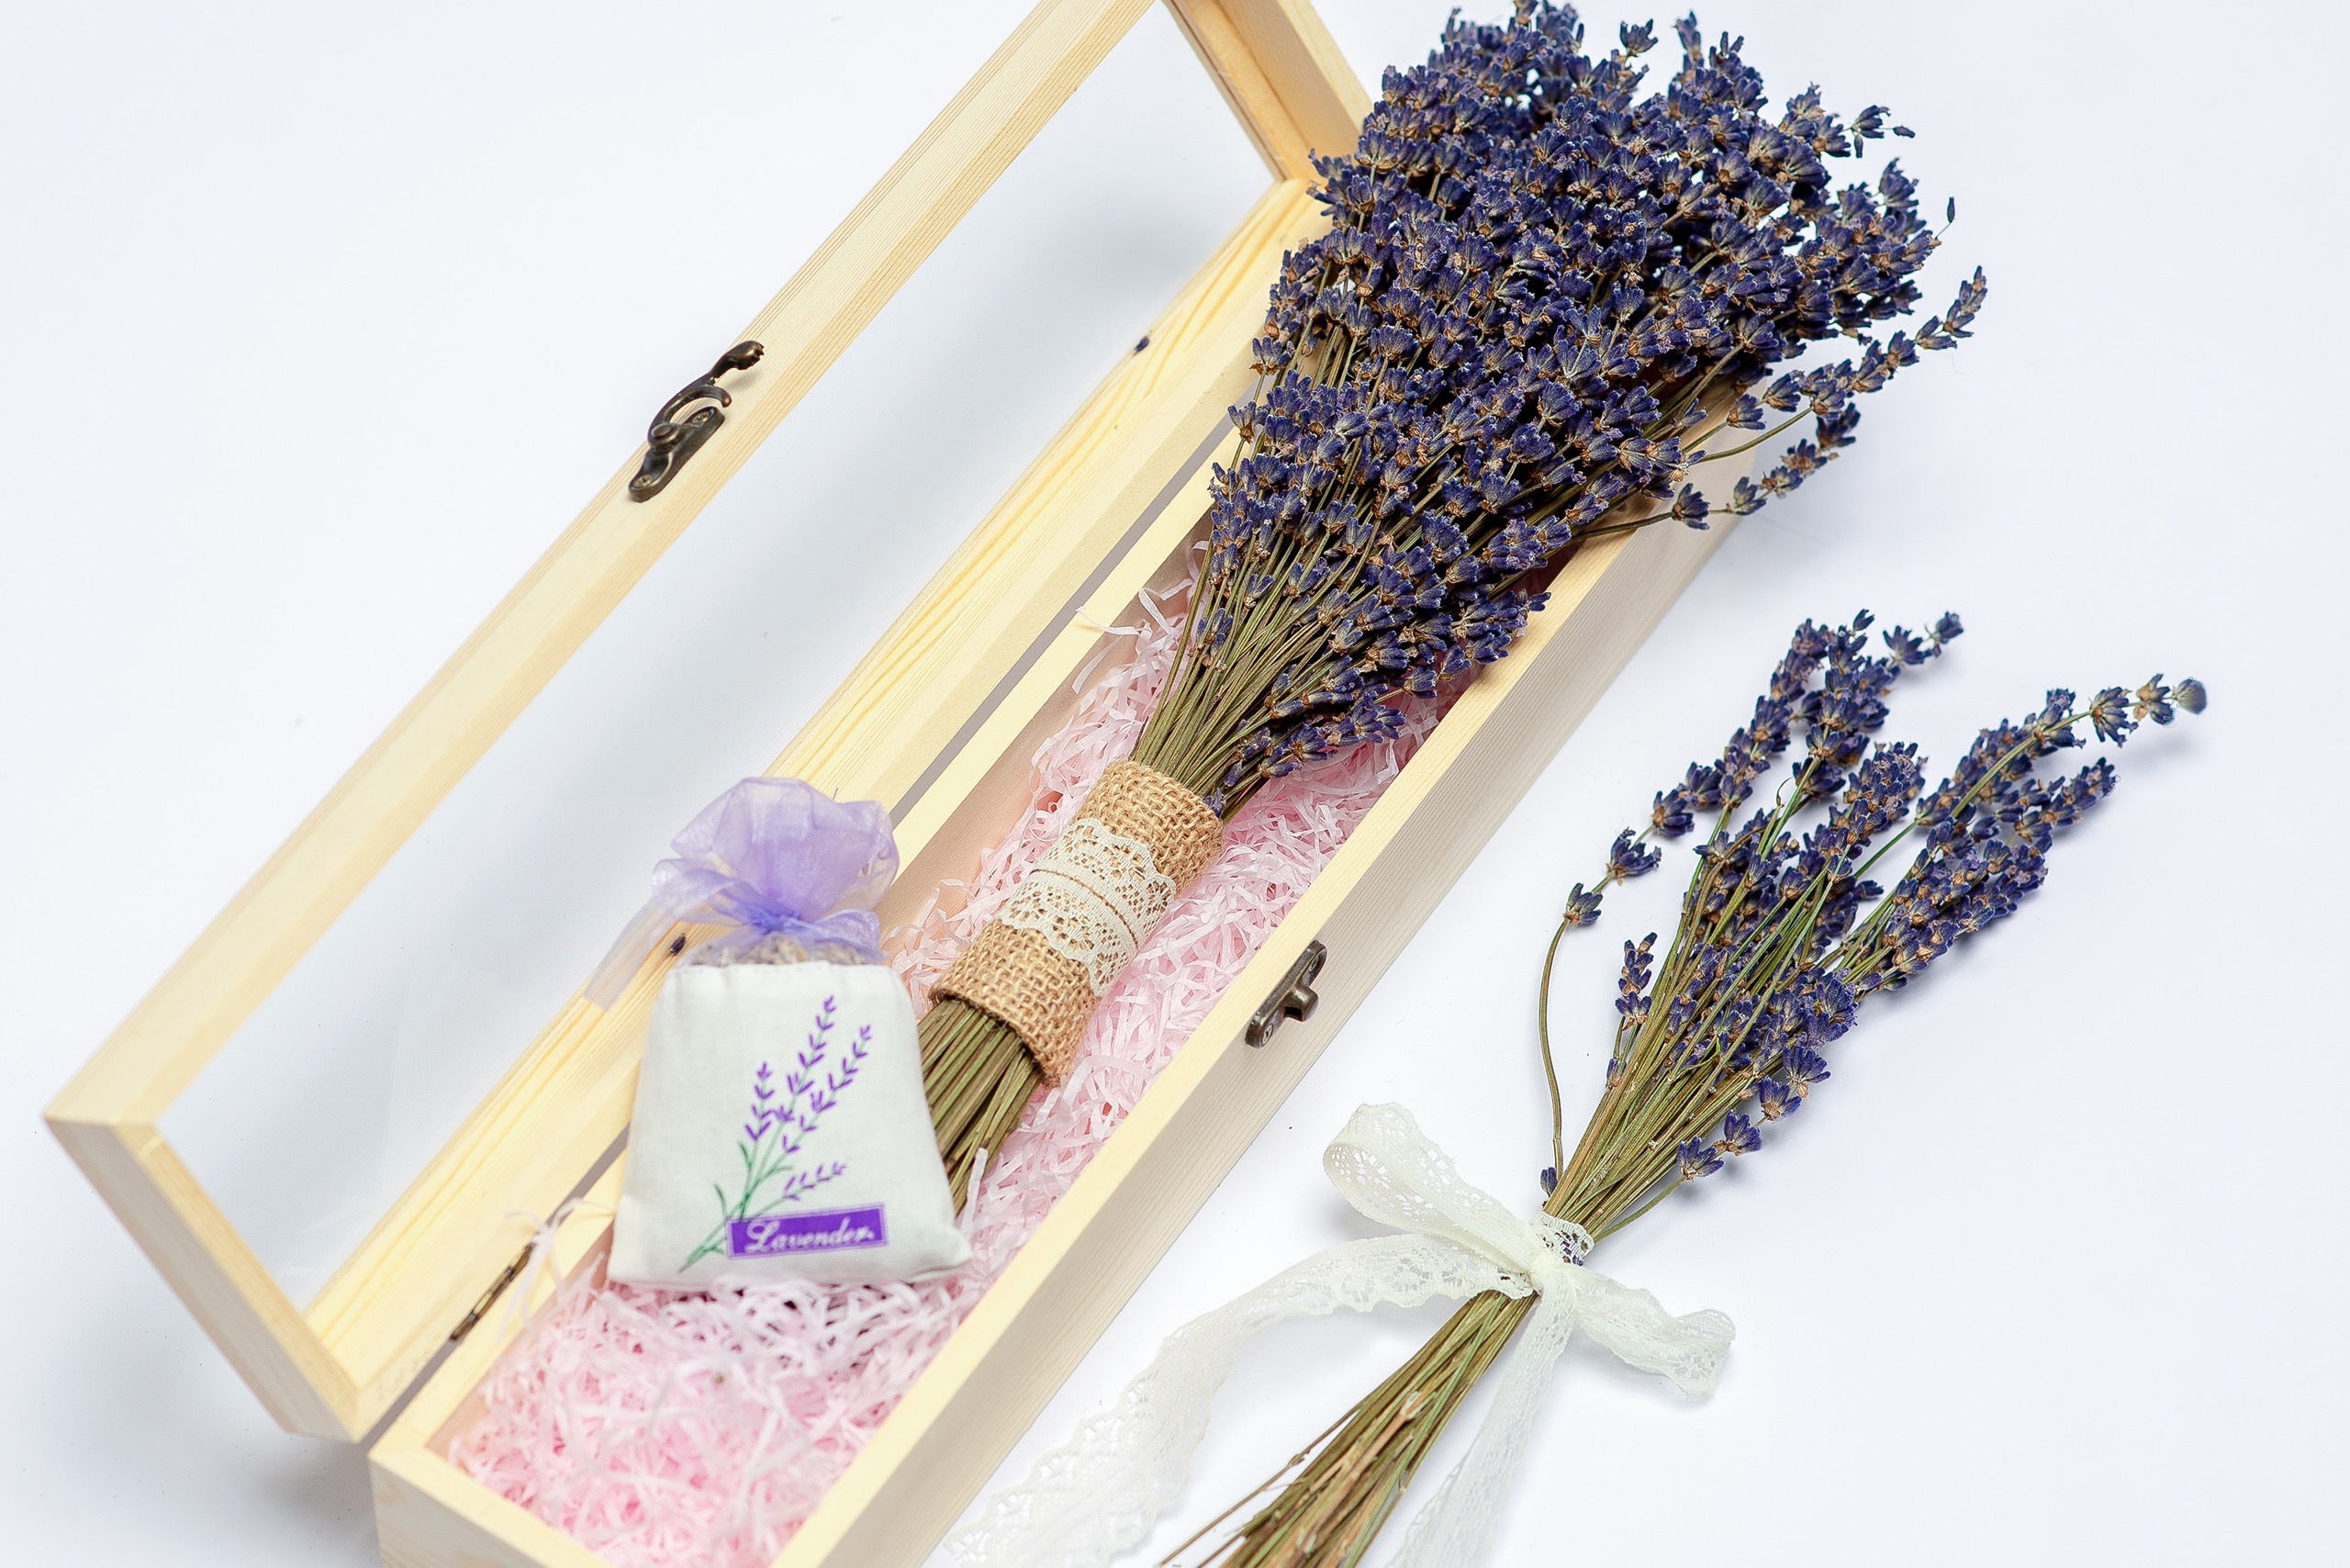 Set hộp quà gỗ hoa Lavender cao cấp nhập khẩu Pháp Wooden Small tặng người yêu, thầy cô dịp 20/10, 20/11, valentine